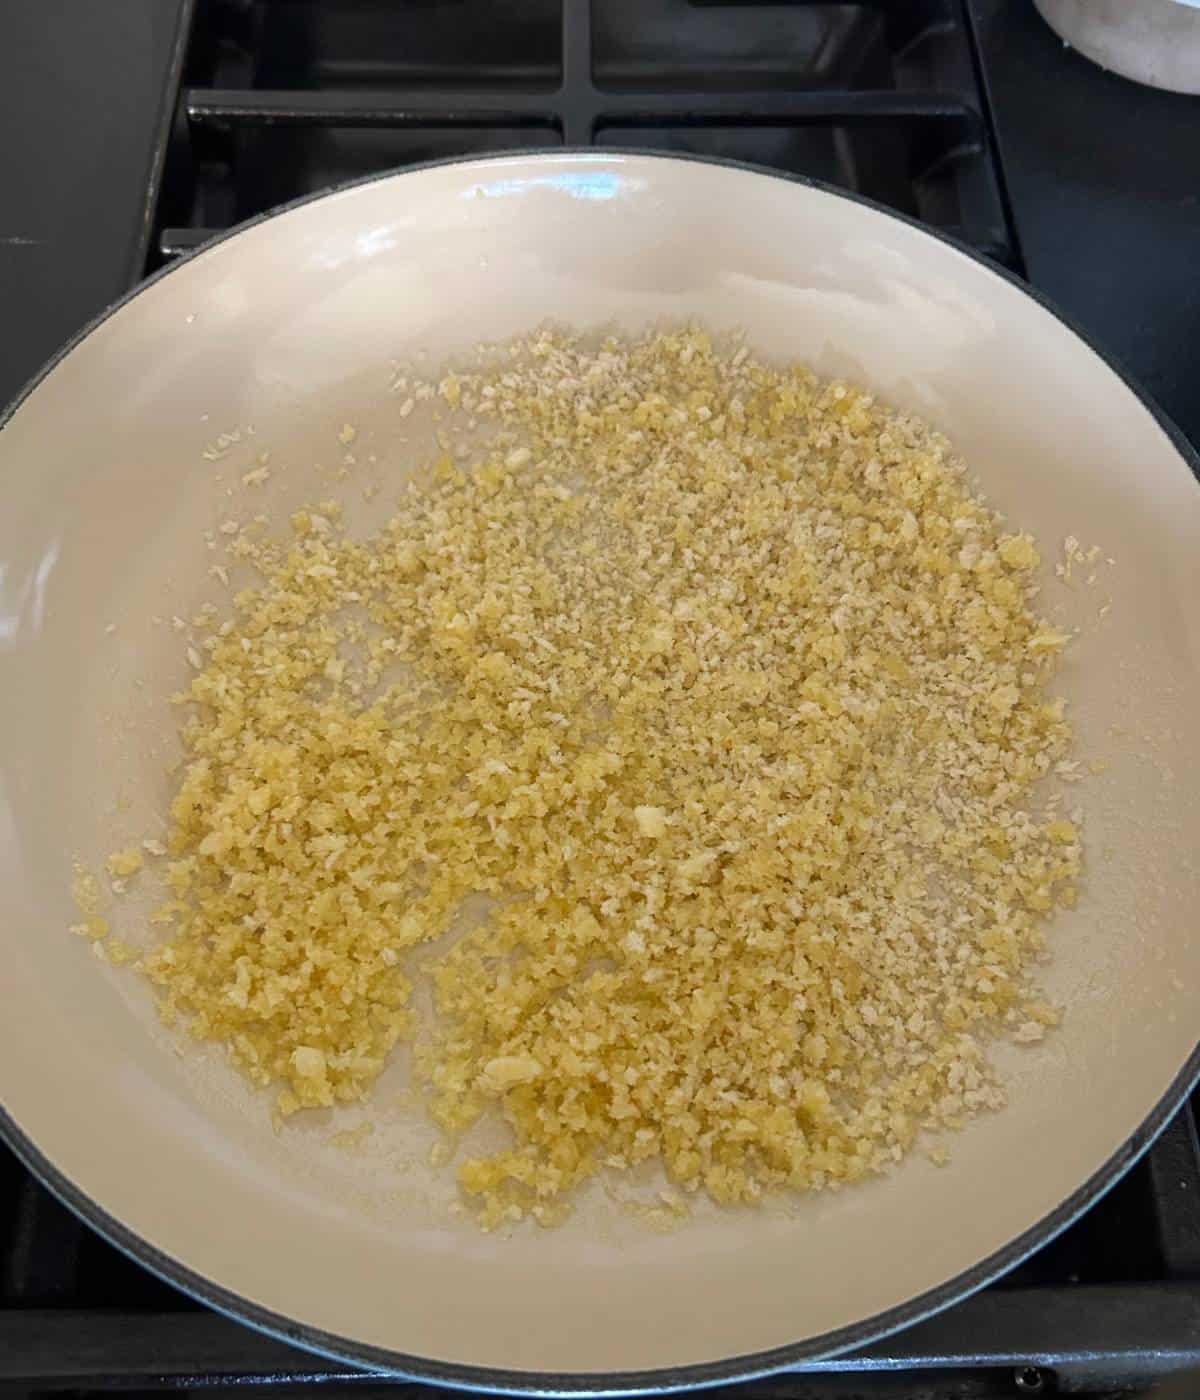 Garlic butter panko topping in skillet.